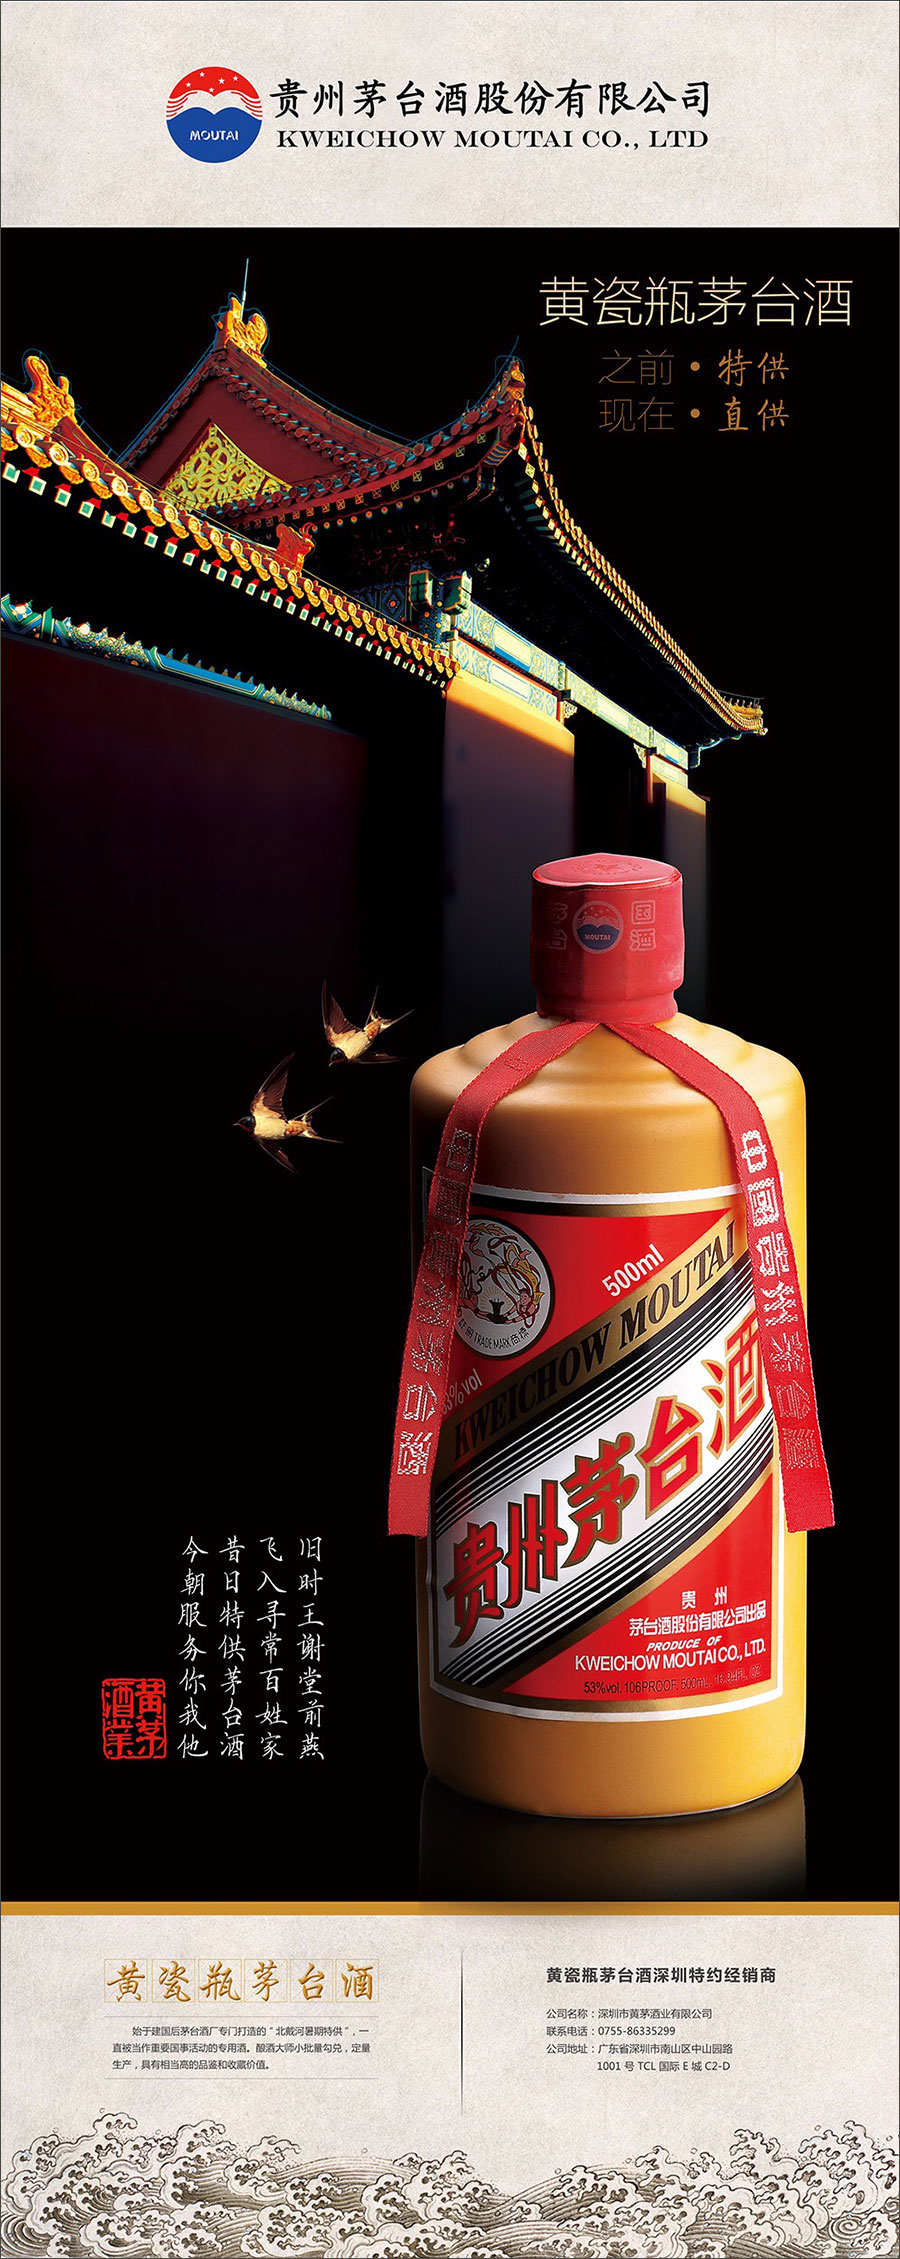 黑眼睛广告为53°飞天黄瓷瓶茅台酒设计的巨幅海报